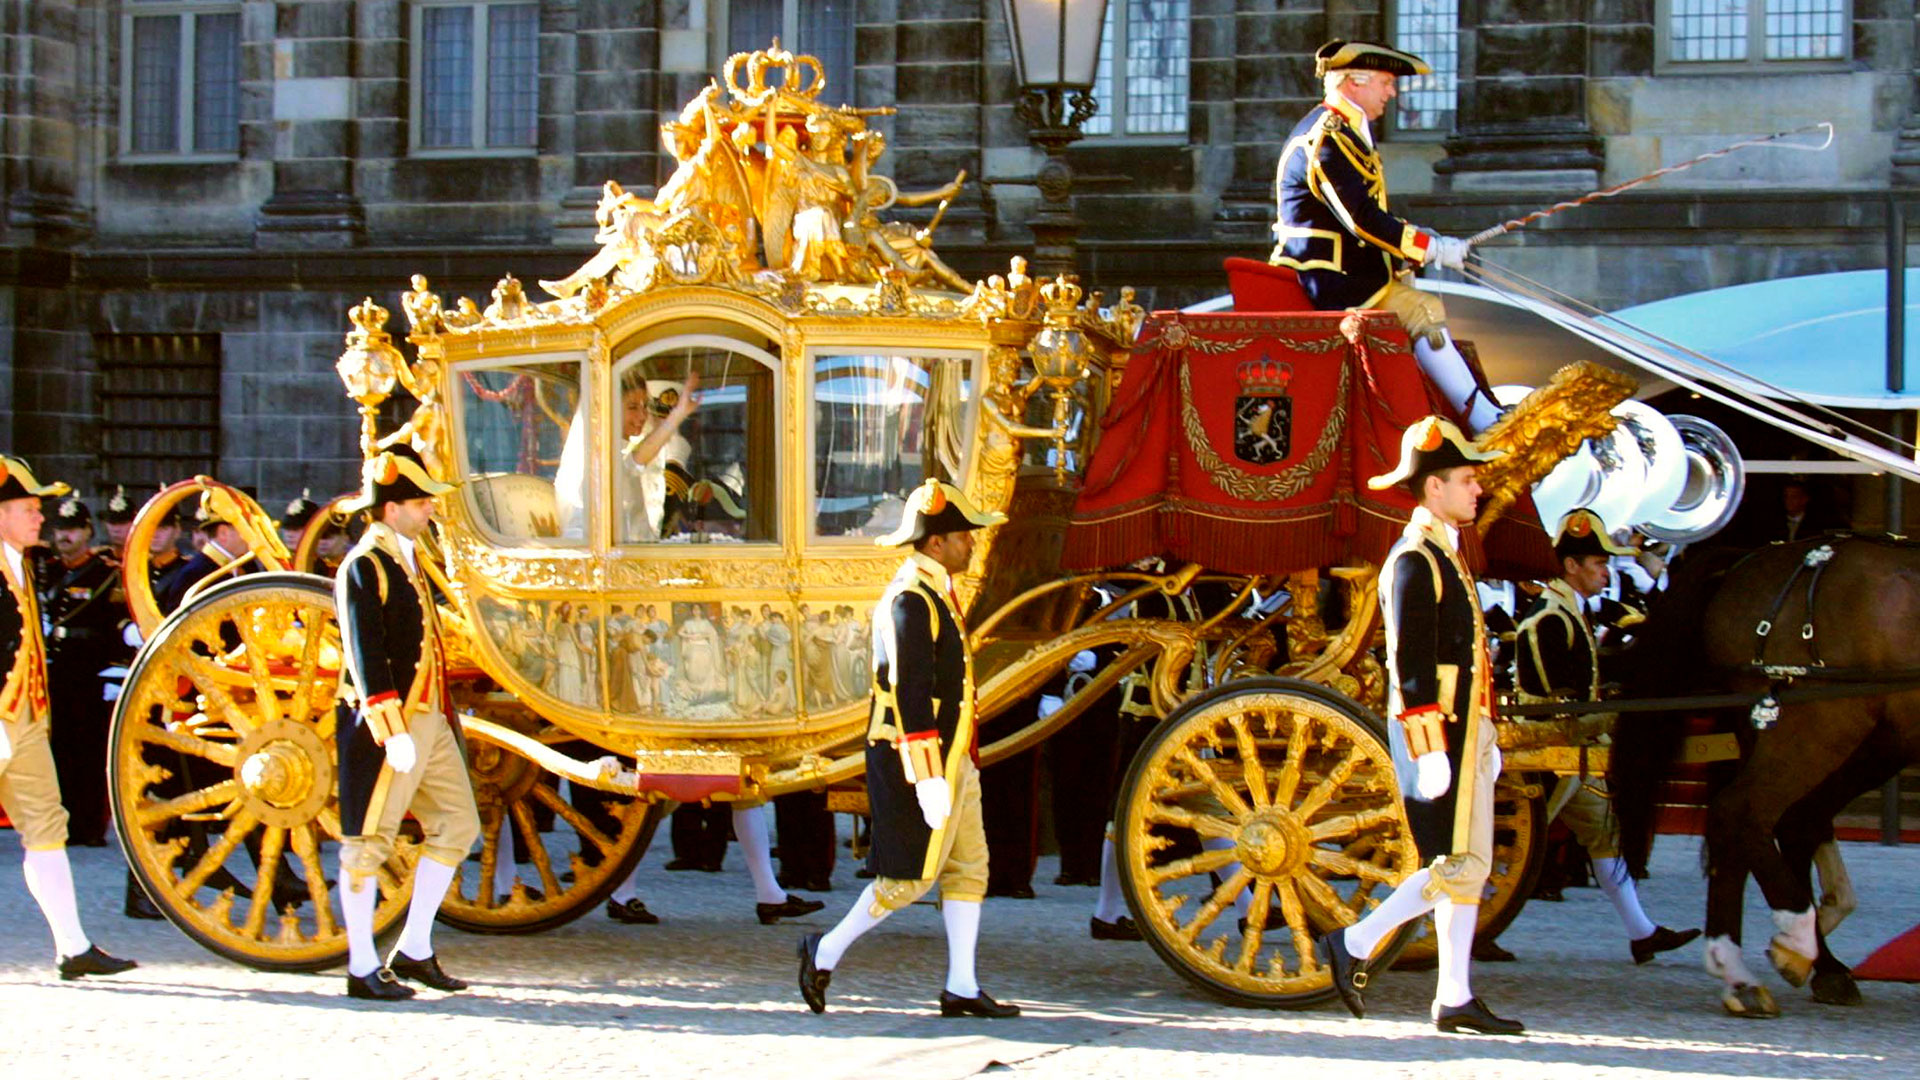 Máxima en la famosa carroza de oro que se usaba para los grandes eventos de la casa real holandesa (Shuttersock)